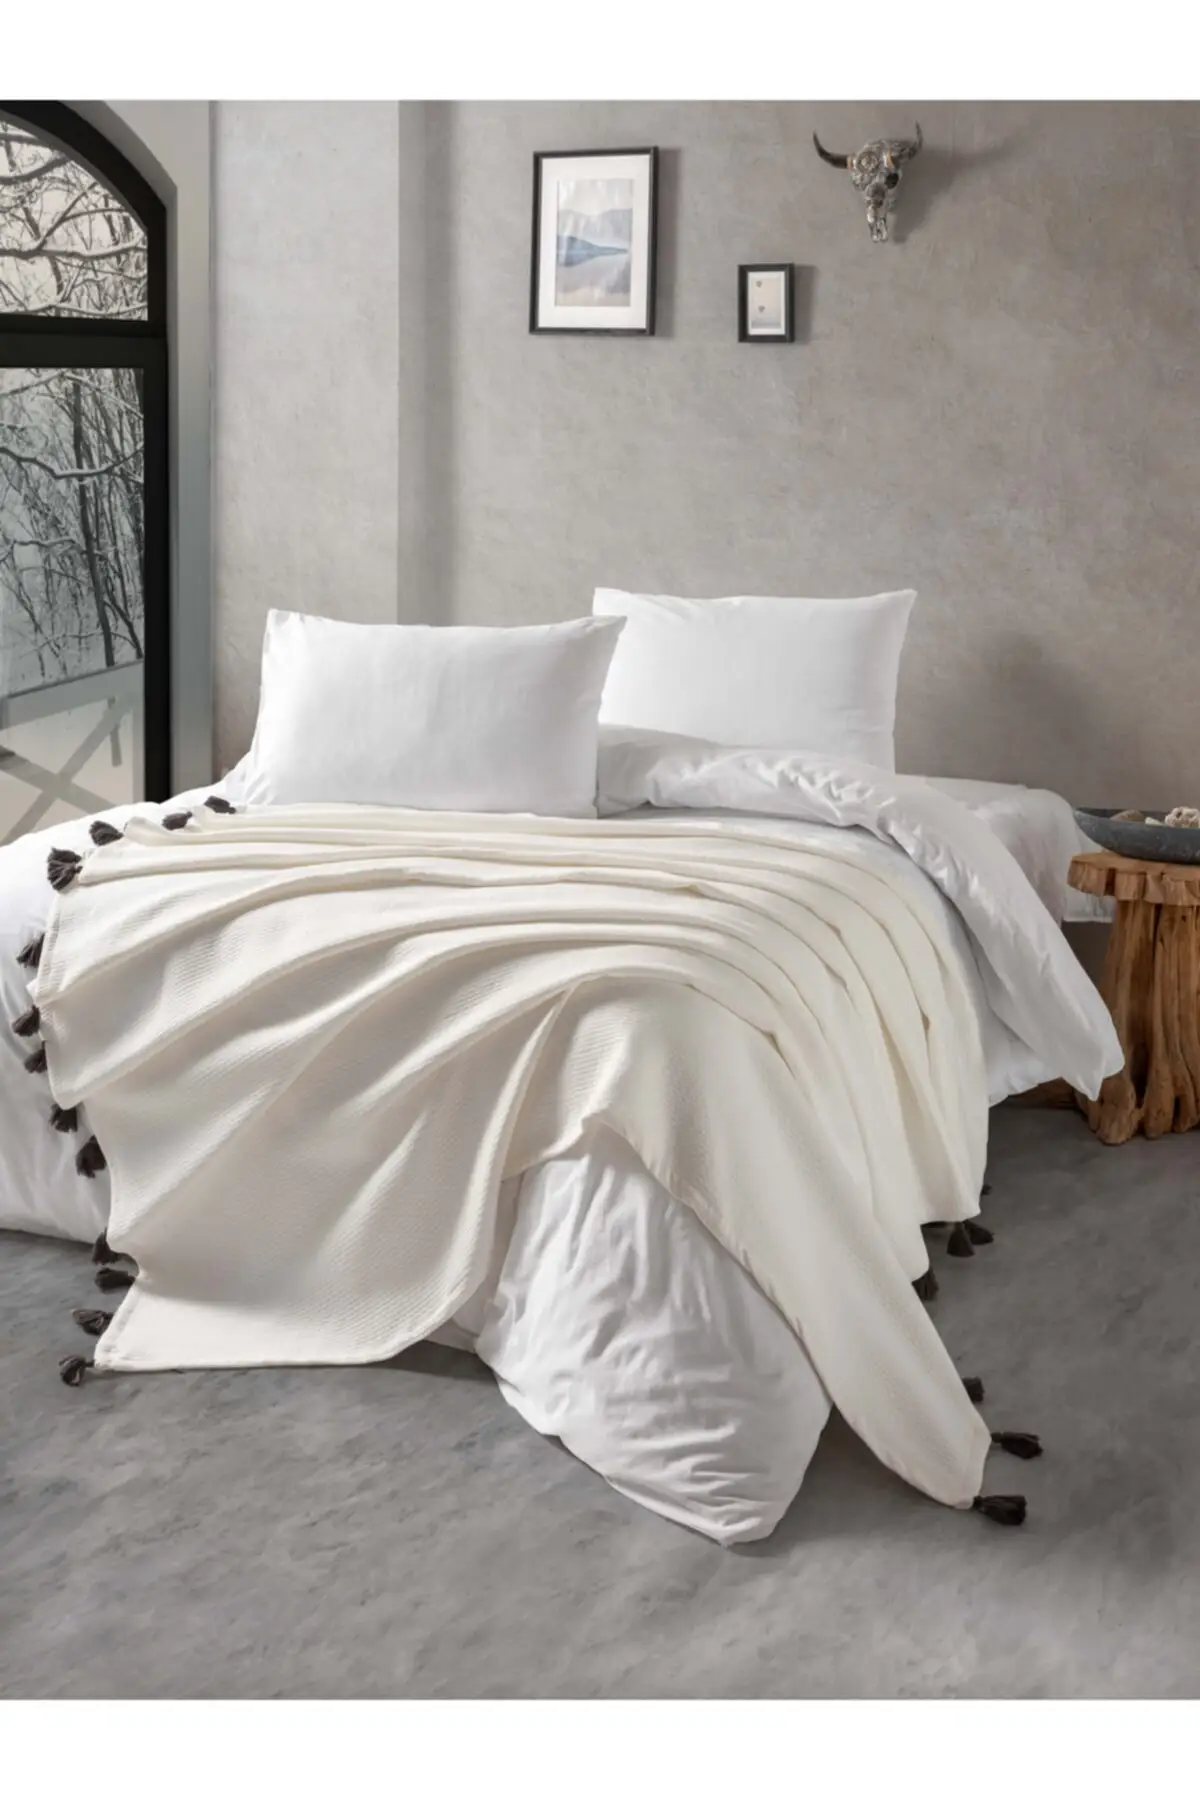 

Постельное белье с одной белой кисточкой на щуку, хлопковая кровать 160x240, ручная работа, снасти на щуку и щуку, текстиль для комнаты, для дома